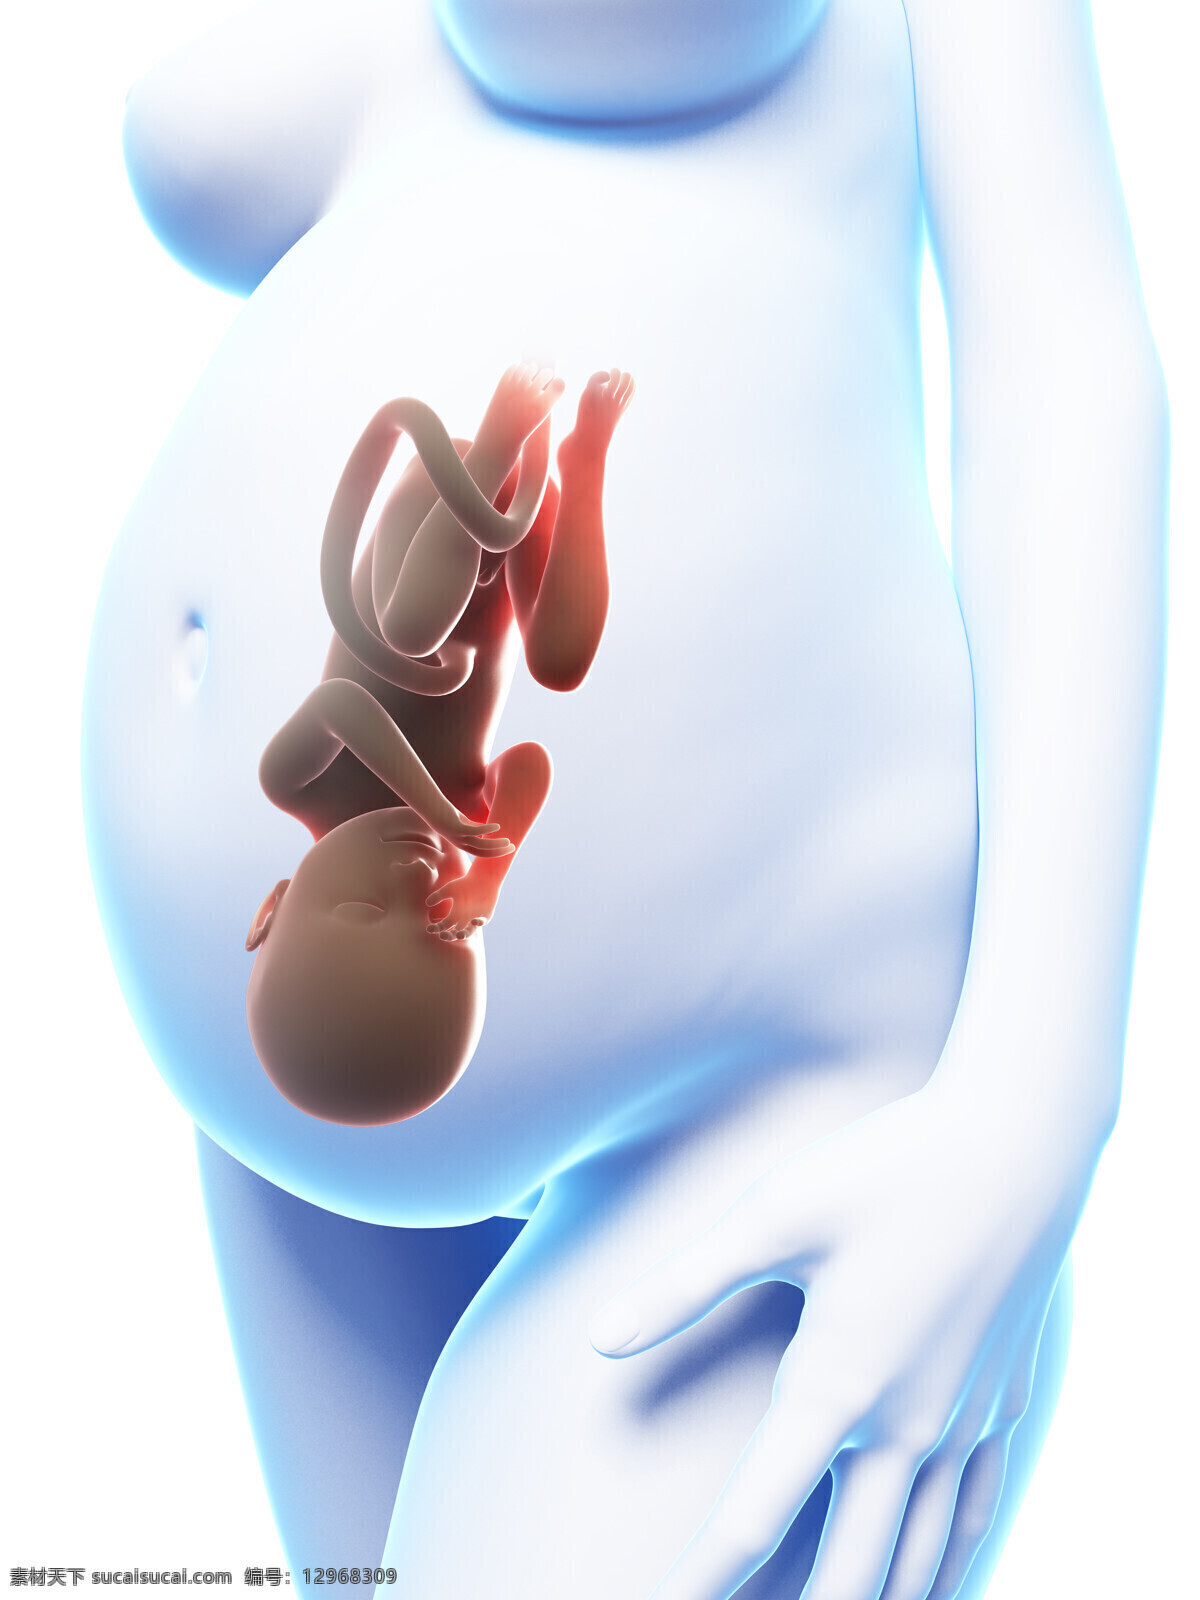 肚子里的胎儿 胎儿 怀孕 宝宝 孕妇 准妈妈 人体器官 医疗护理 现代科技 白色